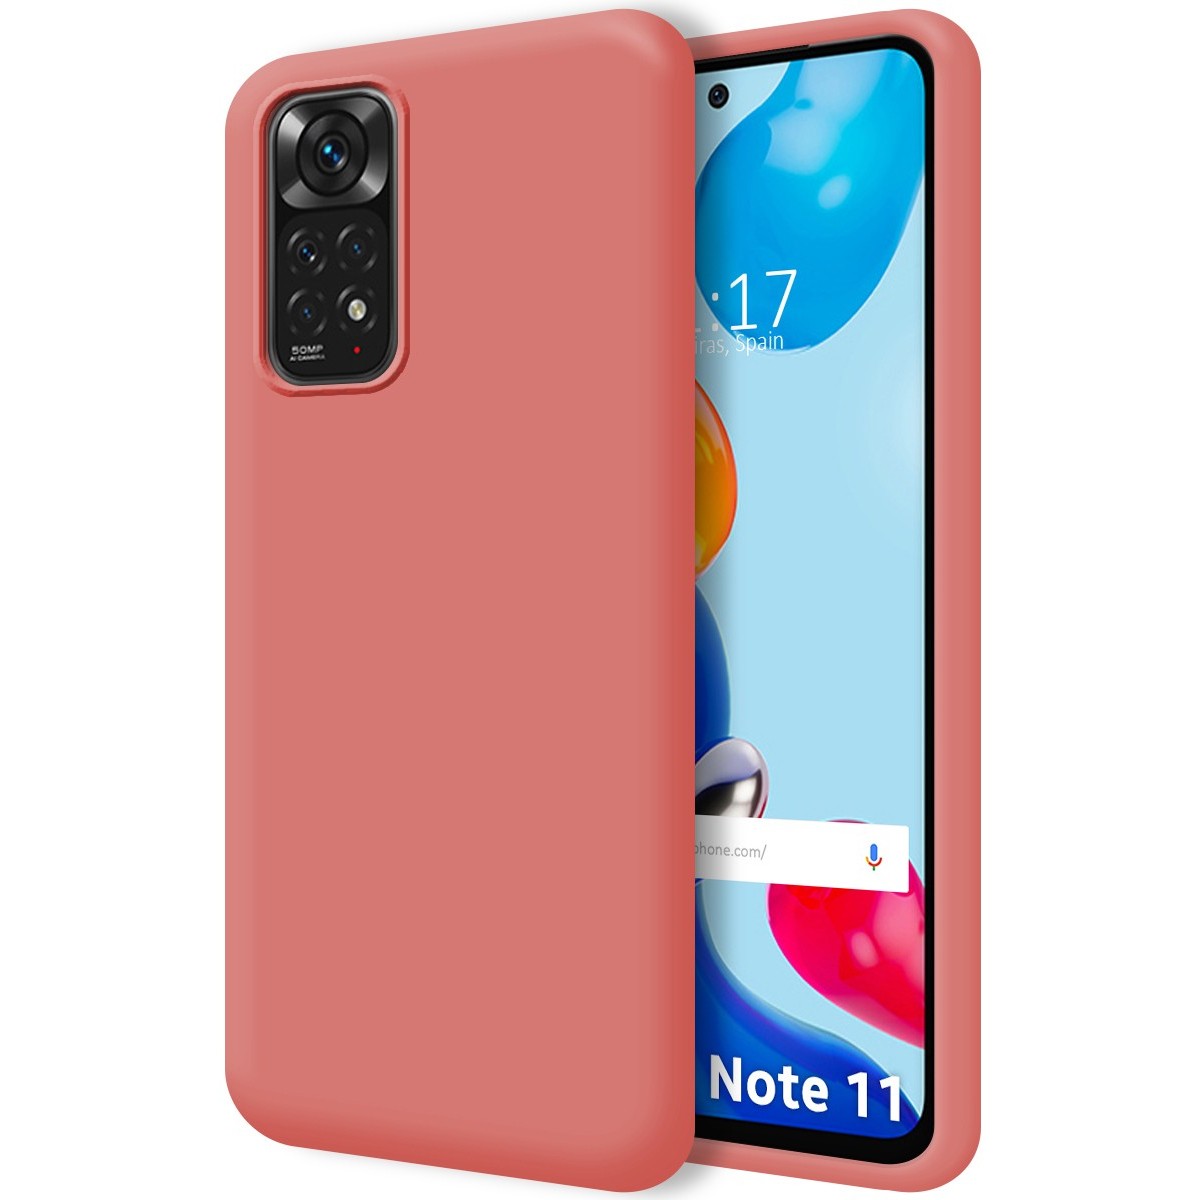 Funda suave y de color para el Xiaomi Redmi Note 11s 5G